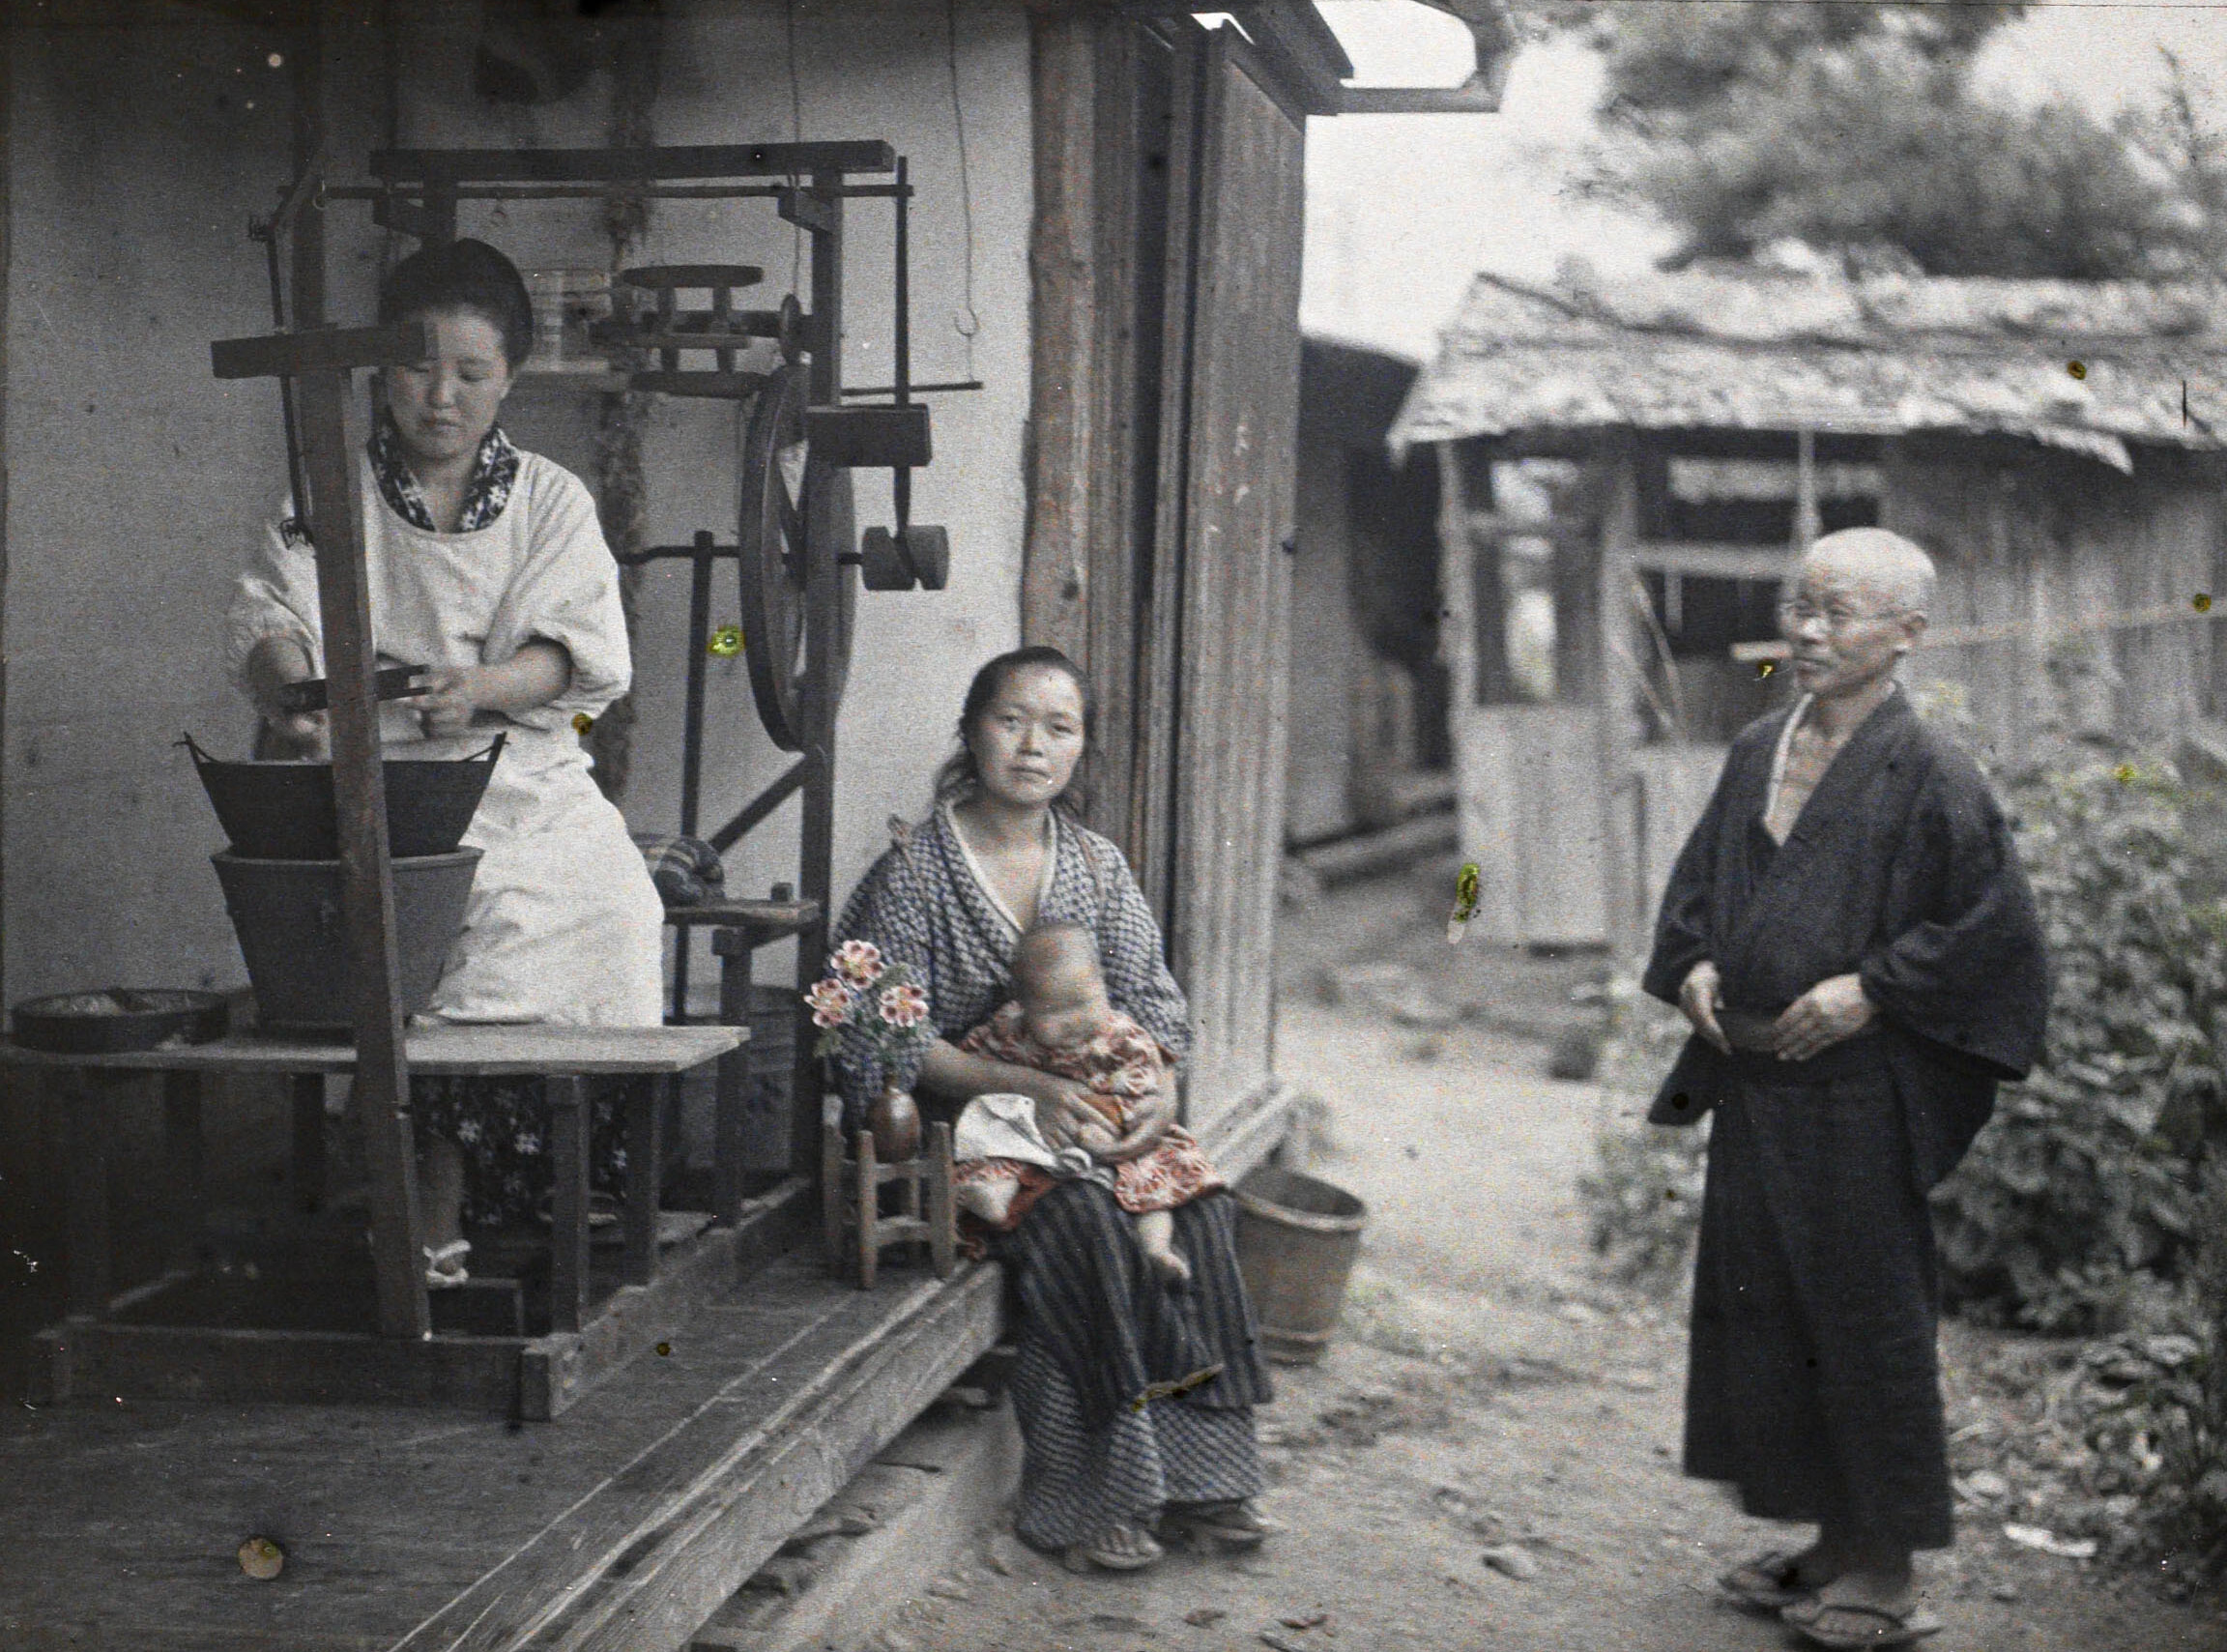 Асама-Онсэн, недалеко от Мацумото, Япония. Разматывание шелковых коконов на большую катушку, 1926 год, автор Роджер Дюма (автохром)